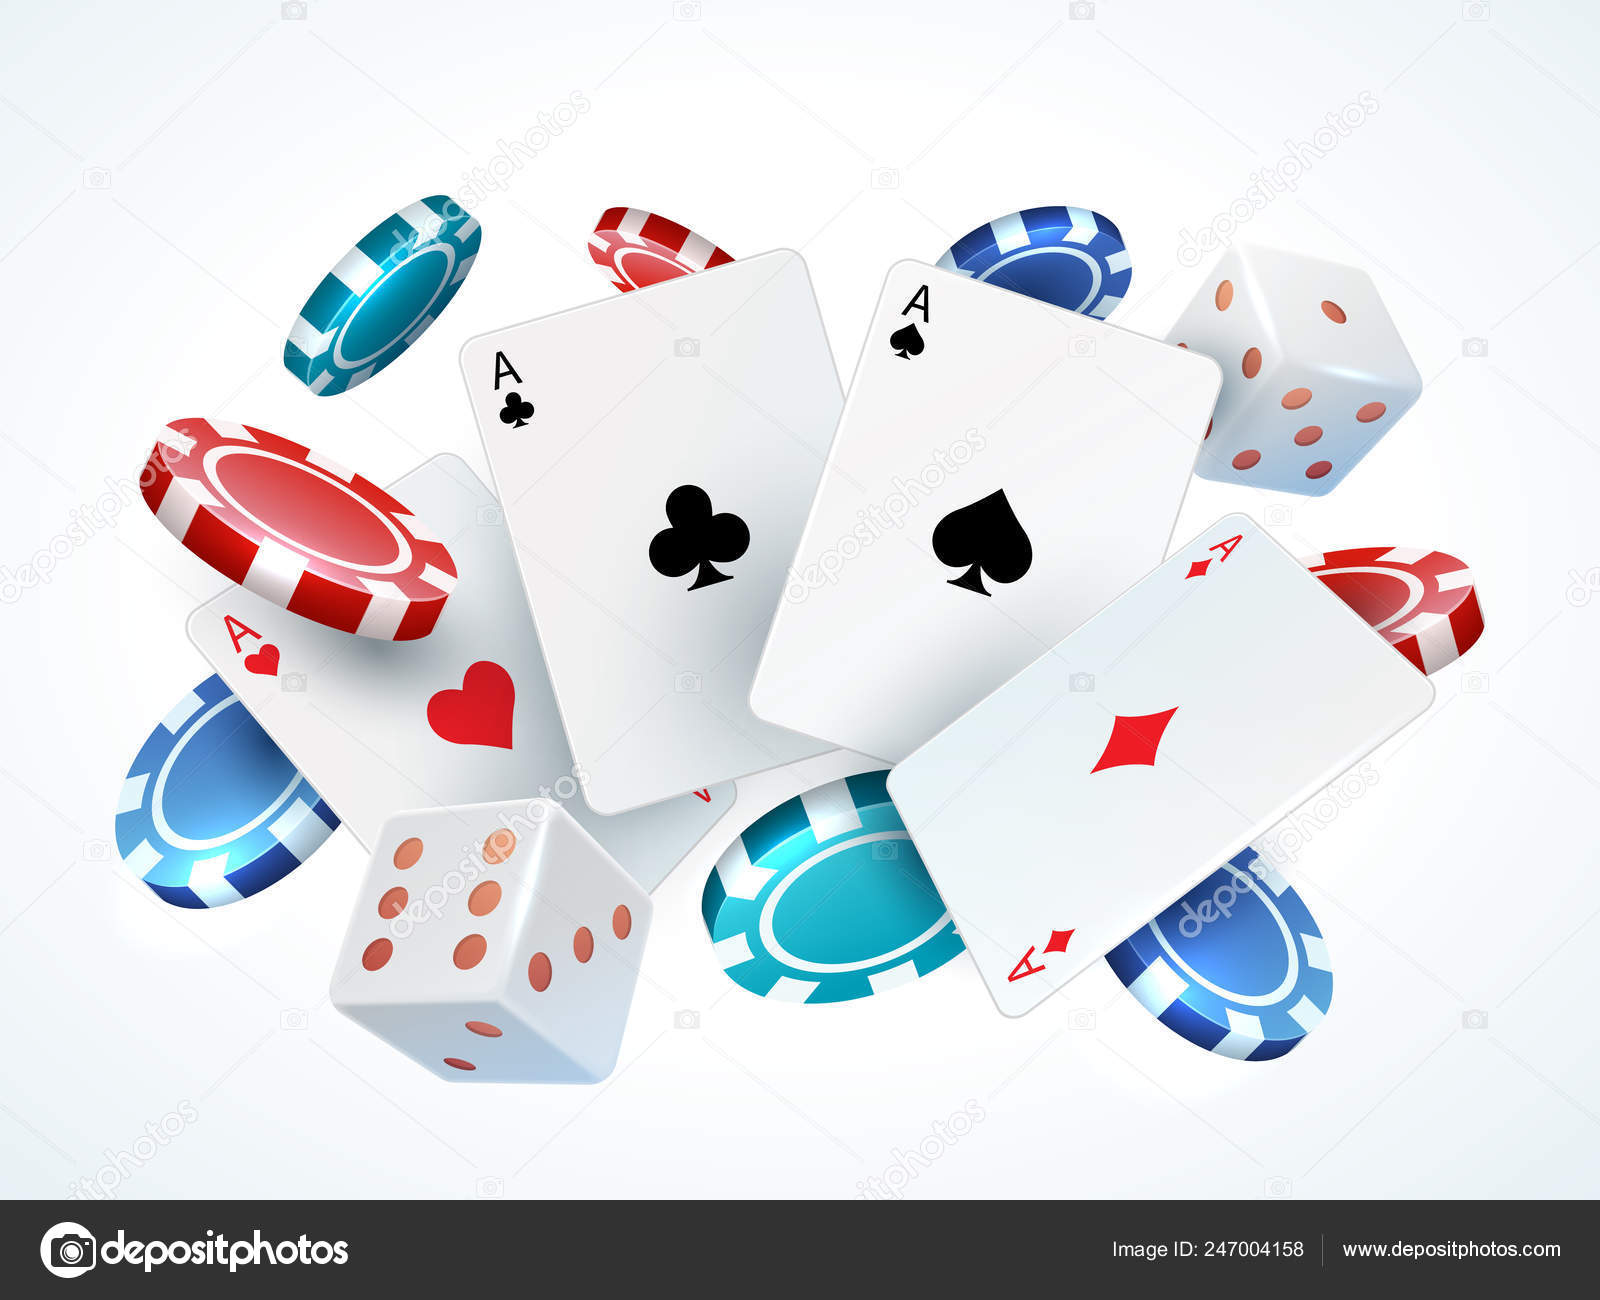 Bandeira de vetor de jogos de jogo de cartas de pôquer online